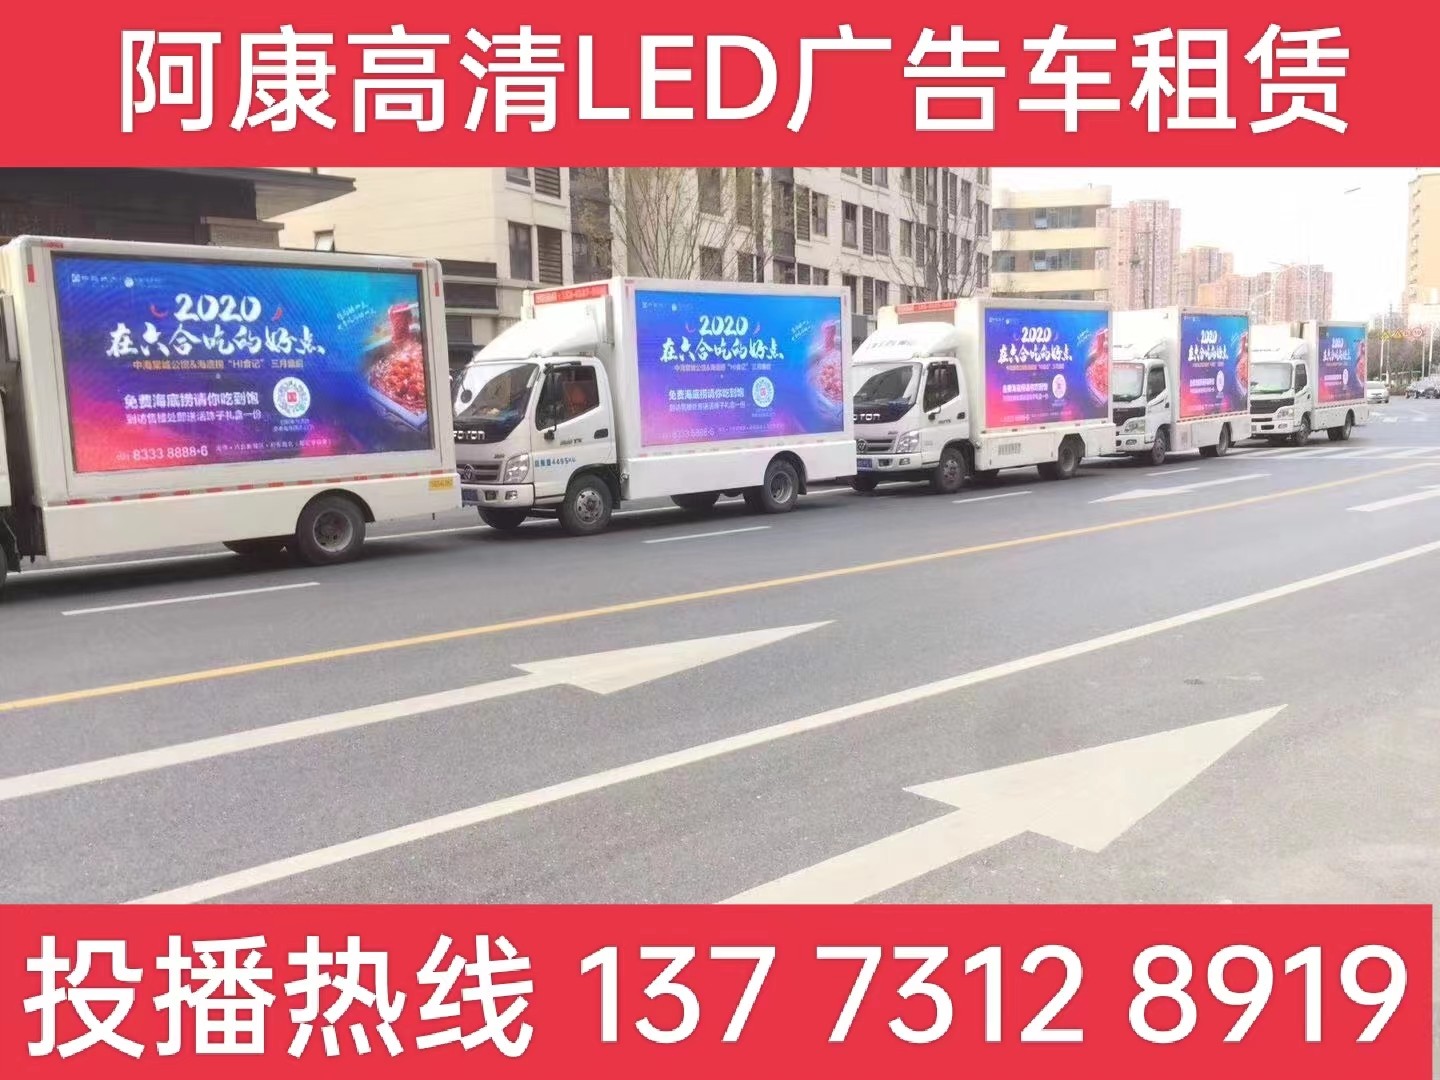 句容宣传车出租-海底捞LED广告